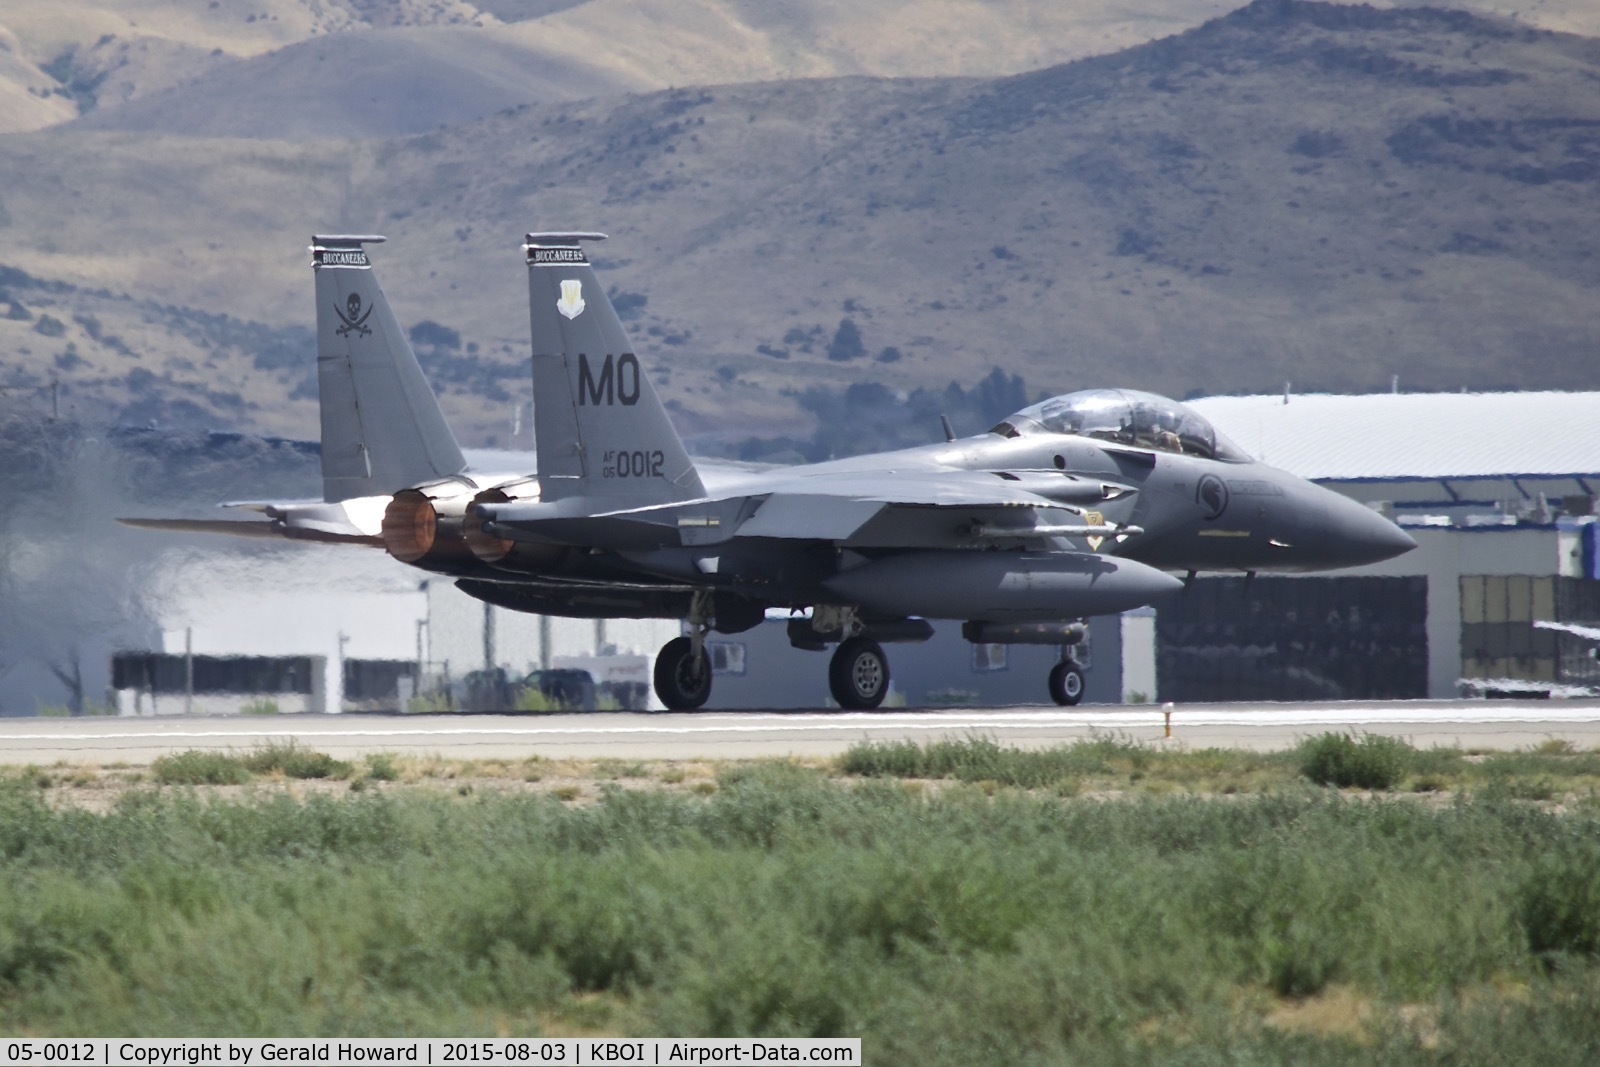 05-0012, 2005 Boeing F-15SG Strike Eagle C/N SG12, Take off run on RWY 10R. 428th Fighter Sq. 